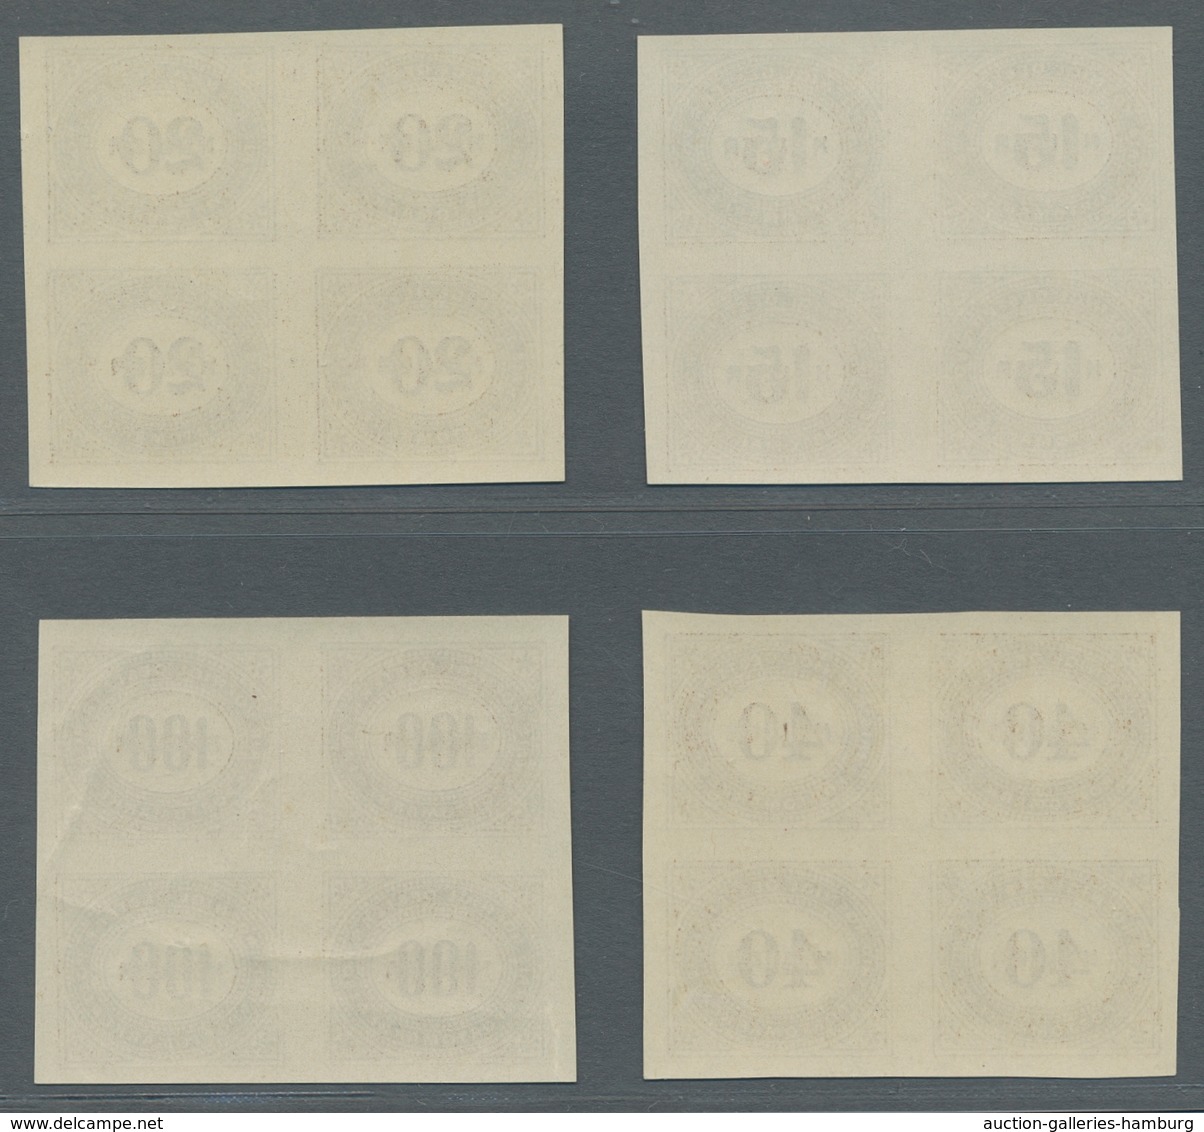 Österreich - Portomarken: 1899, 1 H.-100 H. geschnitten, komplette Serie in 4er-Blocks (6 H. zwei Ma